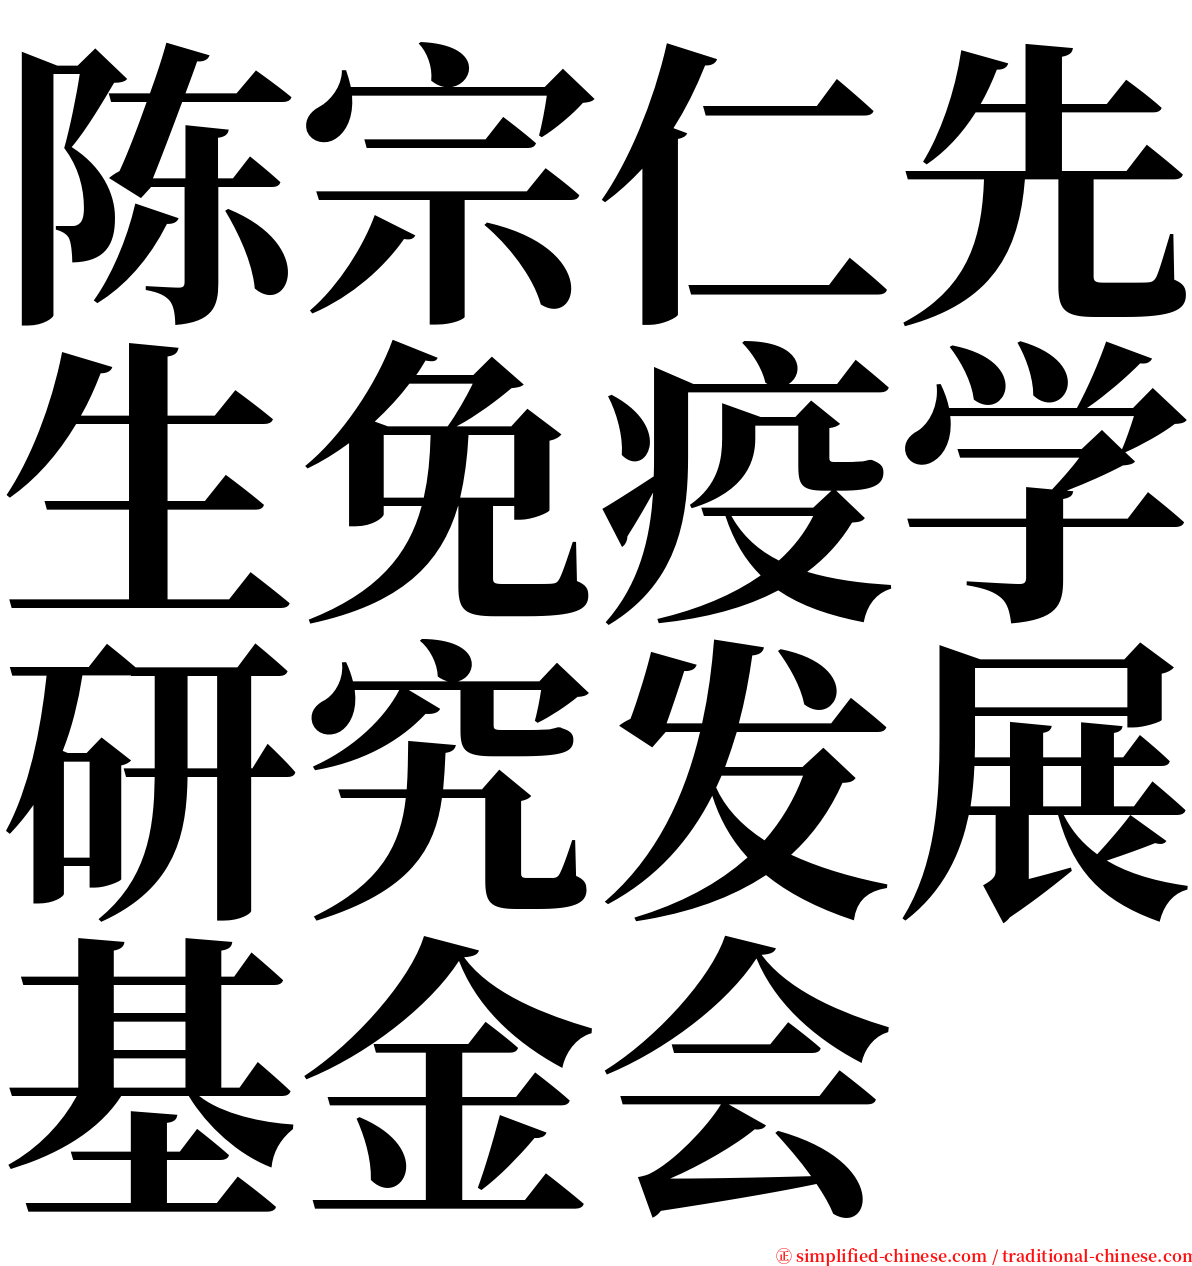 陈宗仁先生免疫学研究发展基金会 serif font